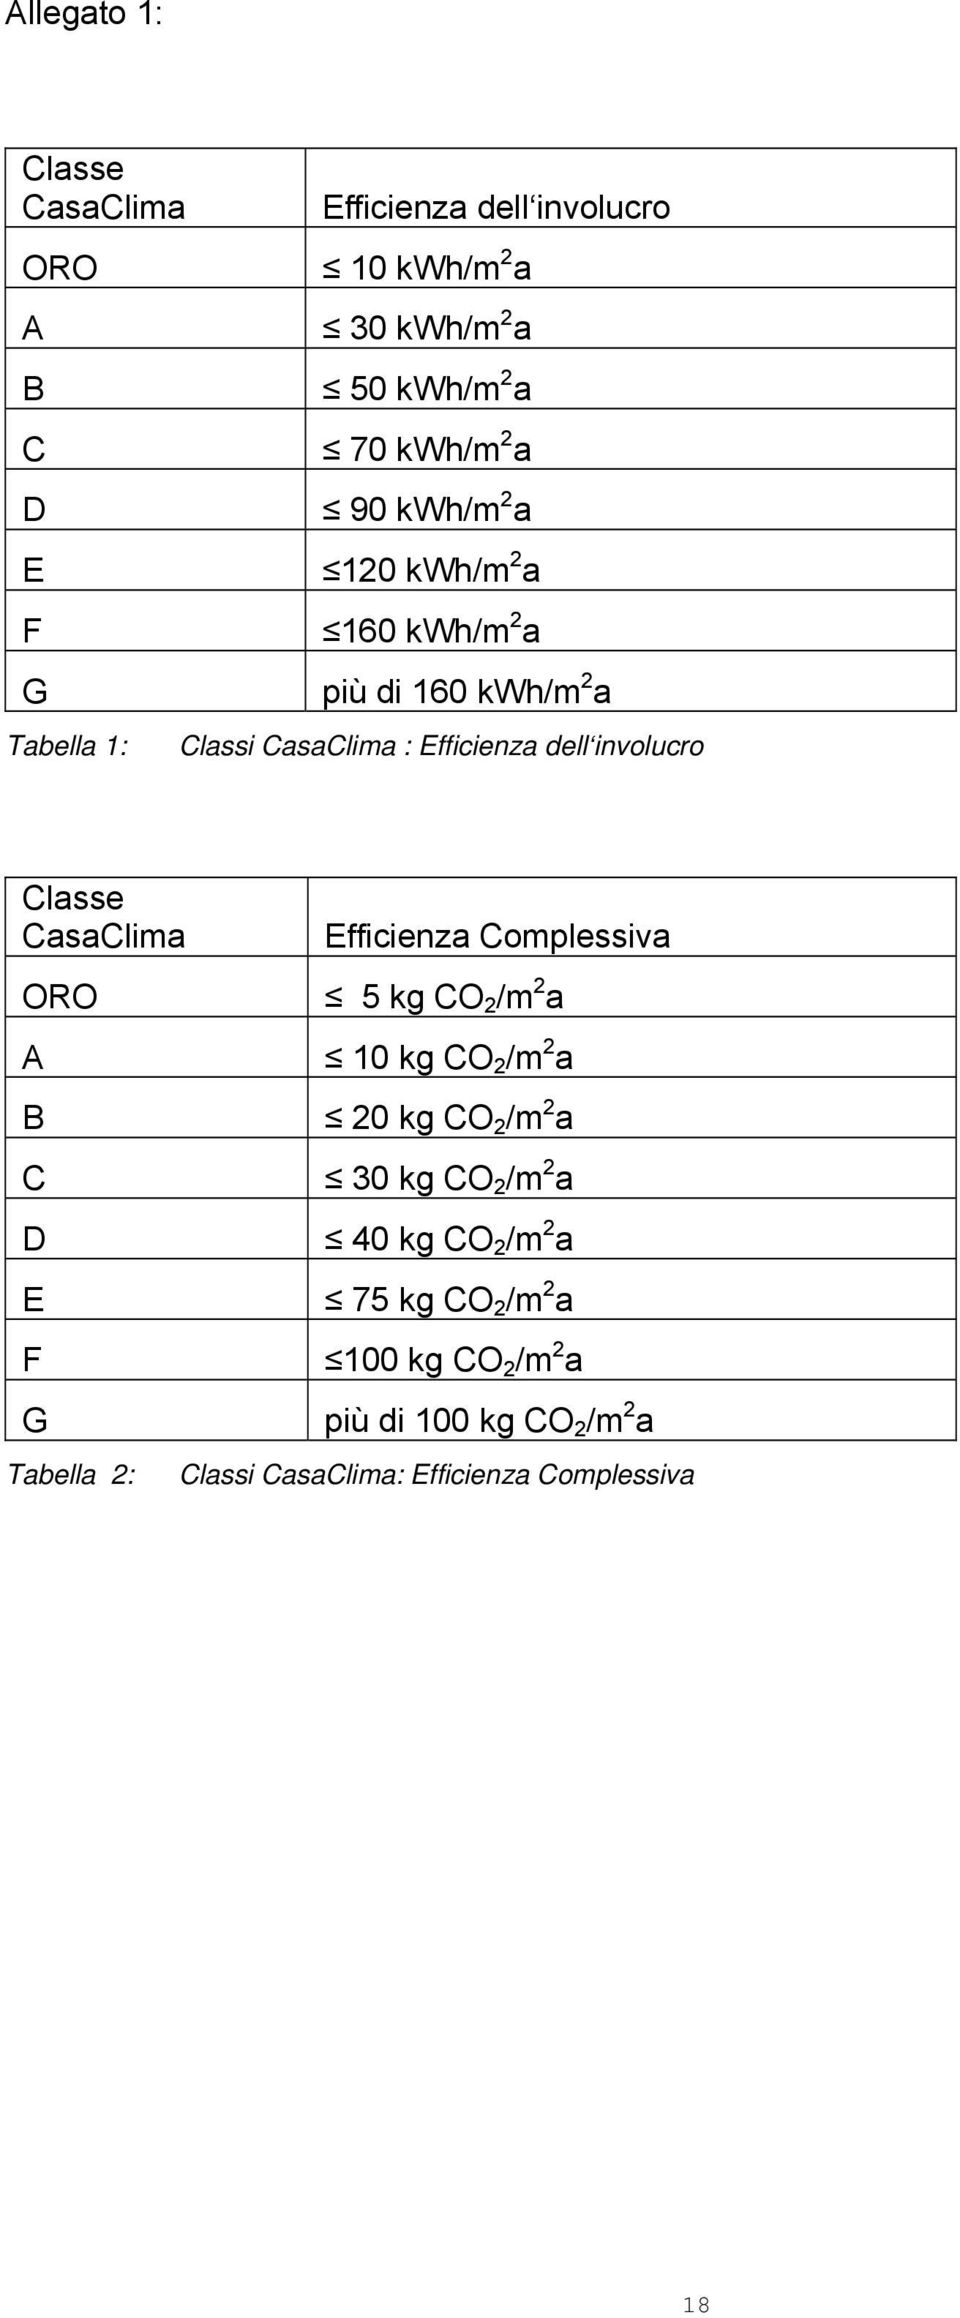 CasaClima ORO A B C D E F G Tabella 2: Efficienza Complessiva 5 kg CO 2 /m 2 a 10 kg CO 2 /m 2 a 20 kg CO 2 /m 2 a 30 kg CO 2